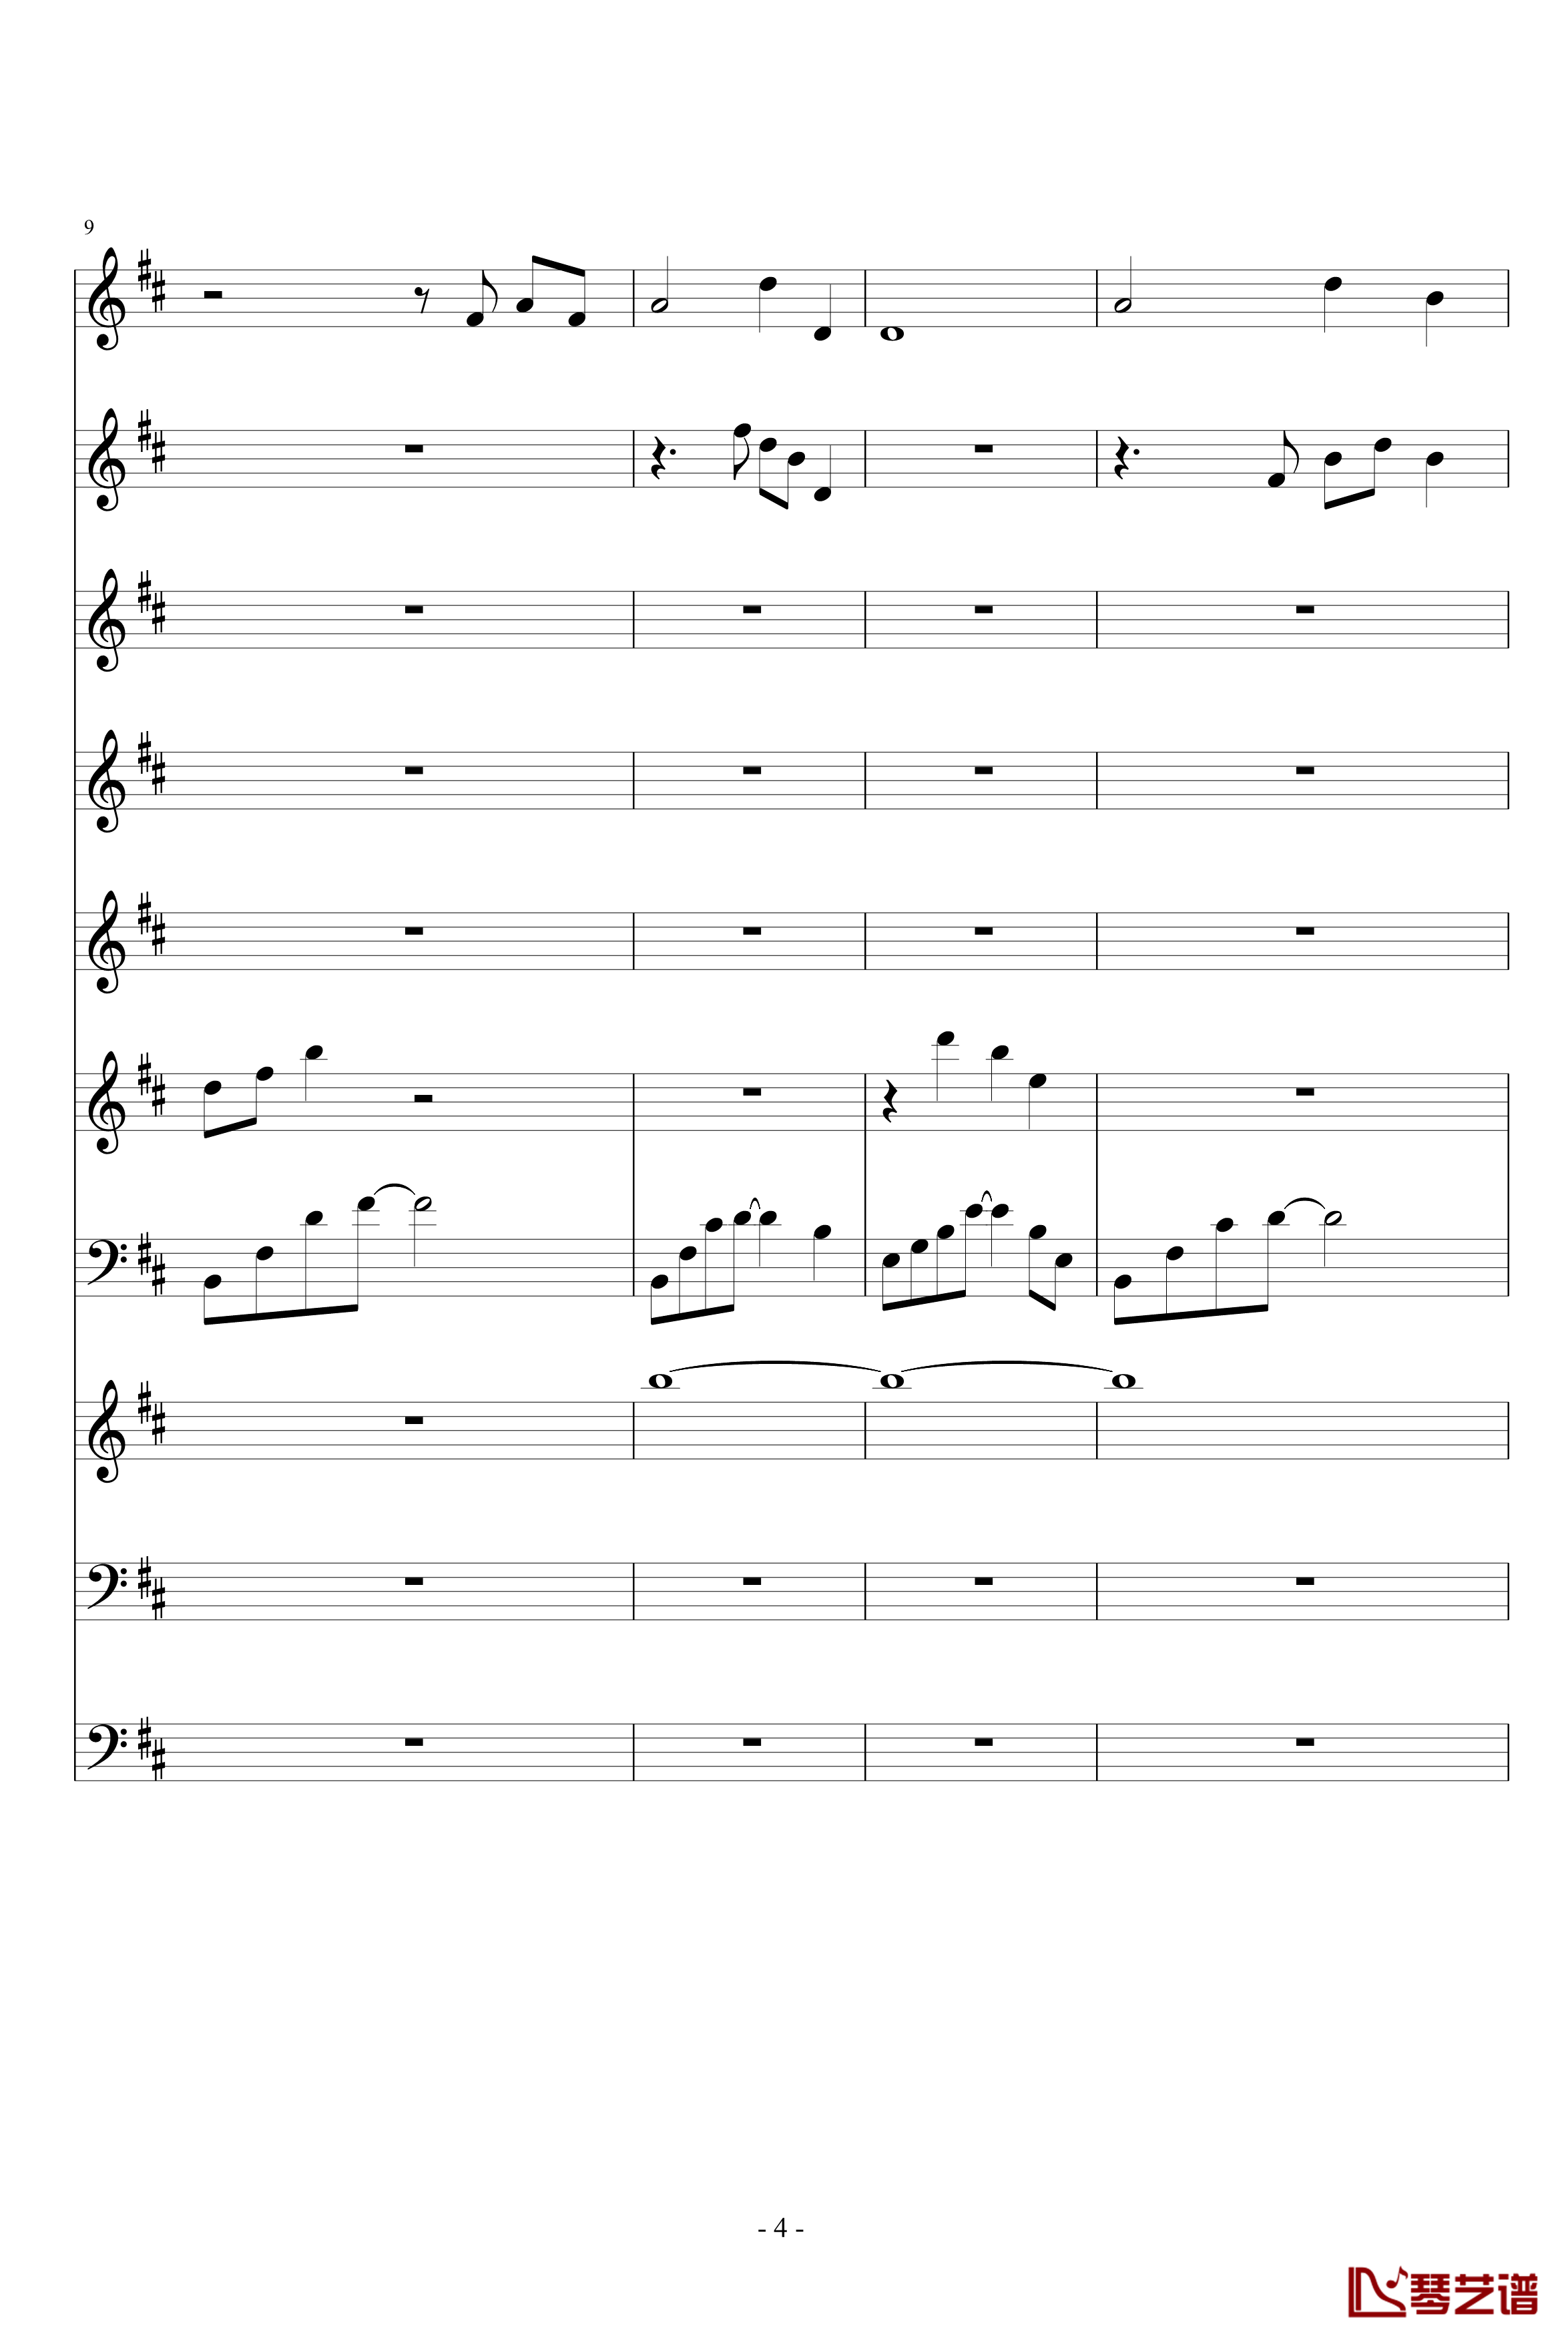 月落暗香坡钢琴谱-巴乌、笛子、琵琶、二胡、古筝-peterkingily4